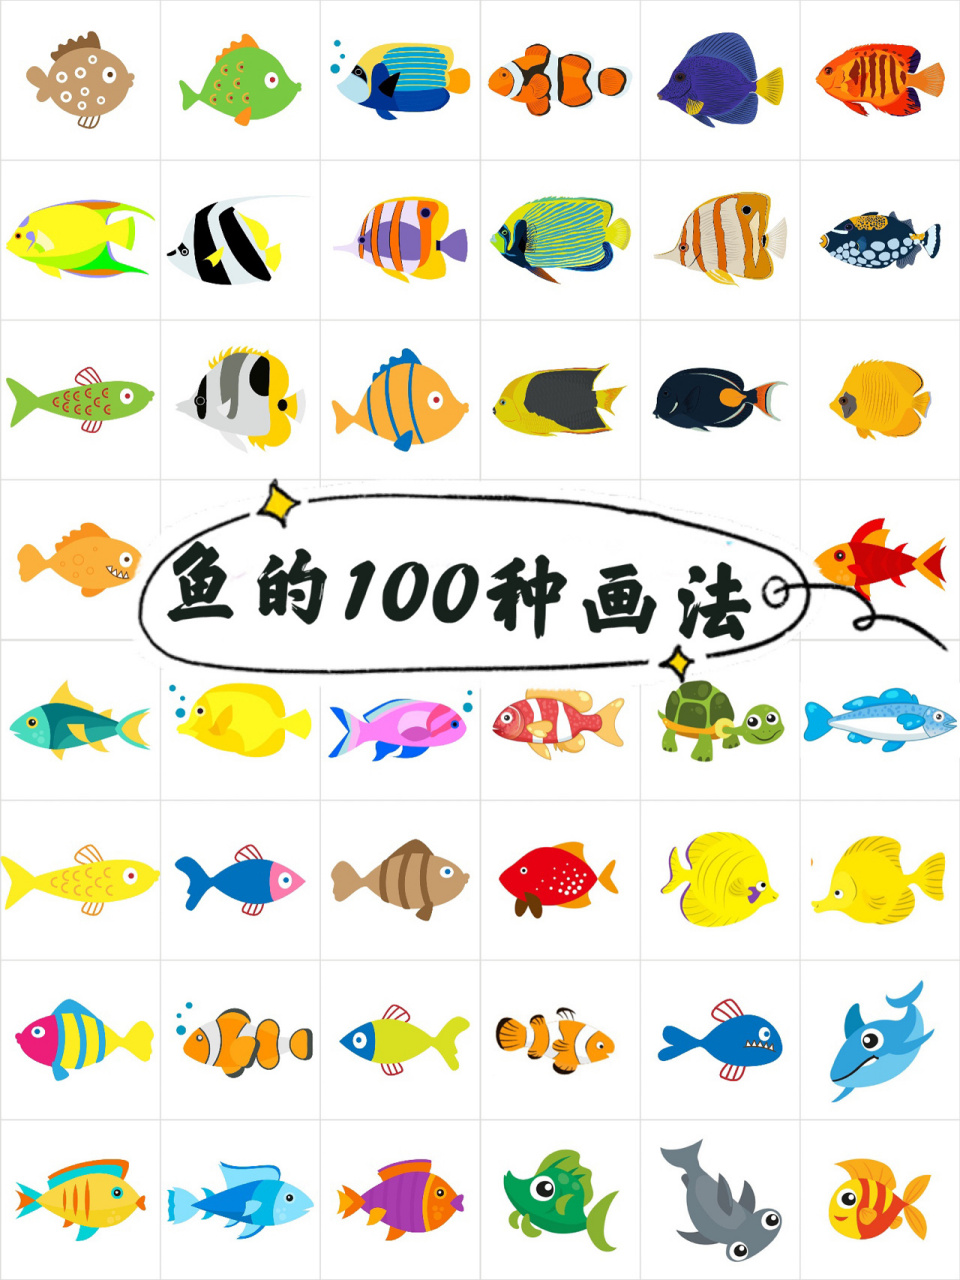 鱼的简笔画100种画法,绘画海洋生物 鱼的100种画法,你喜欢哪种呢?